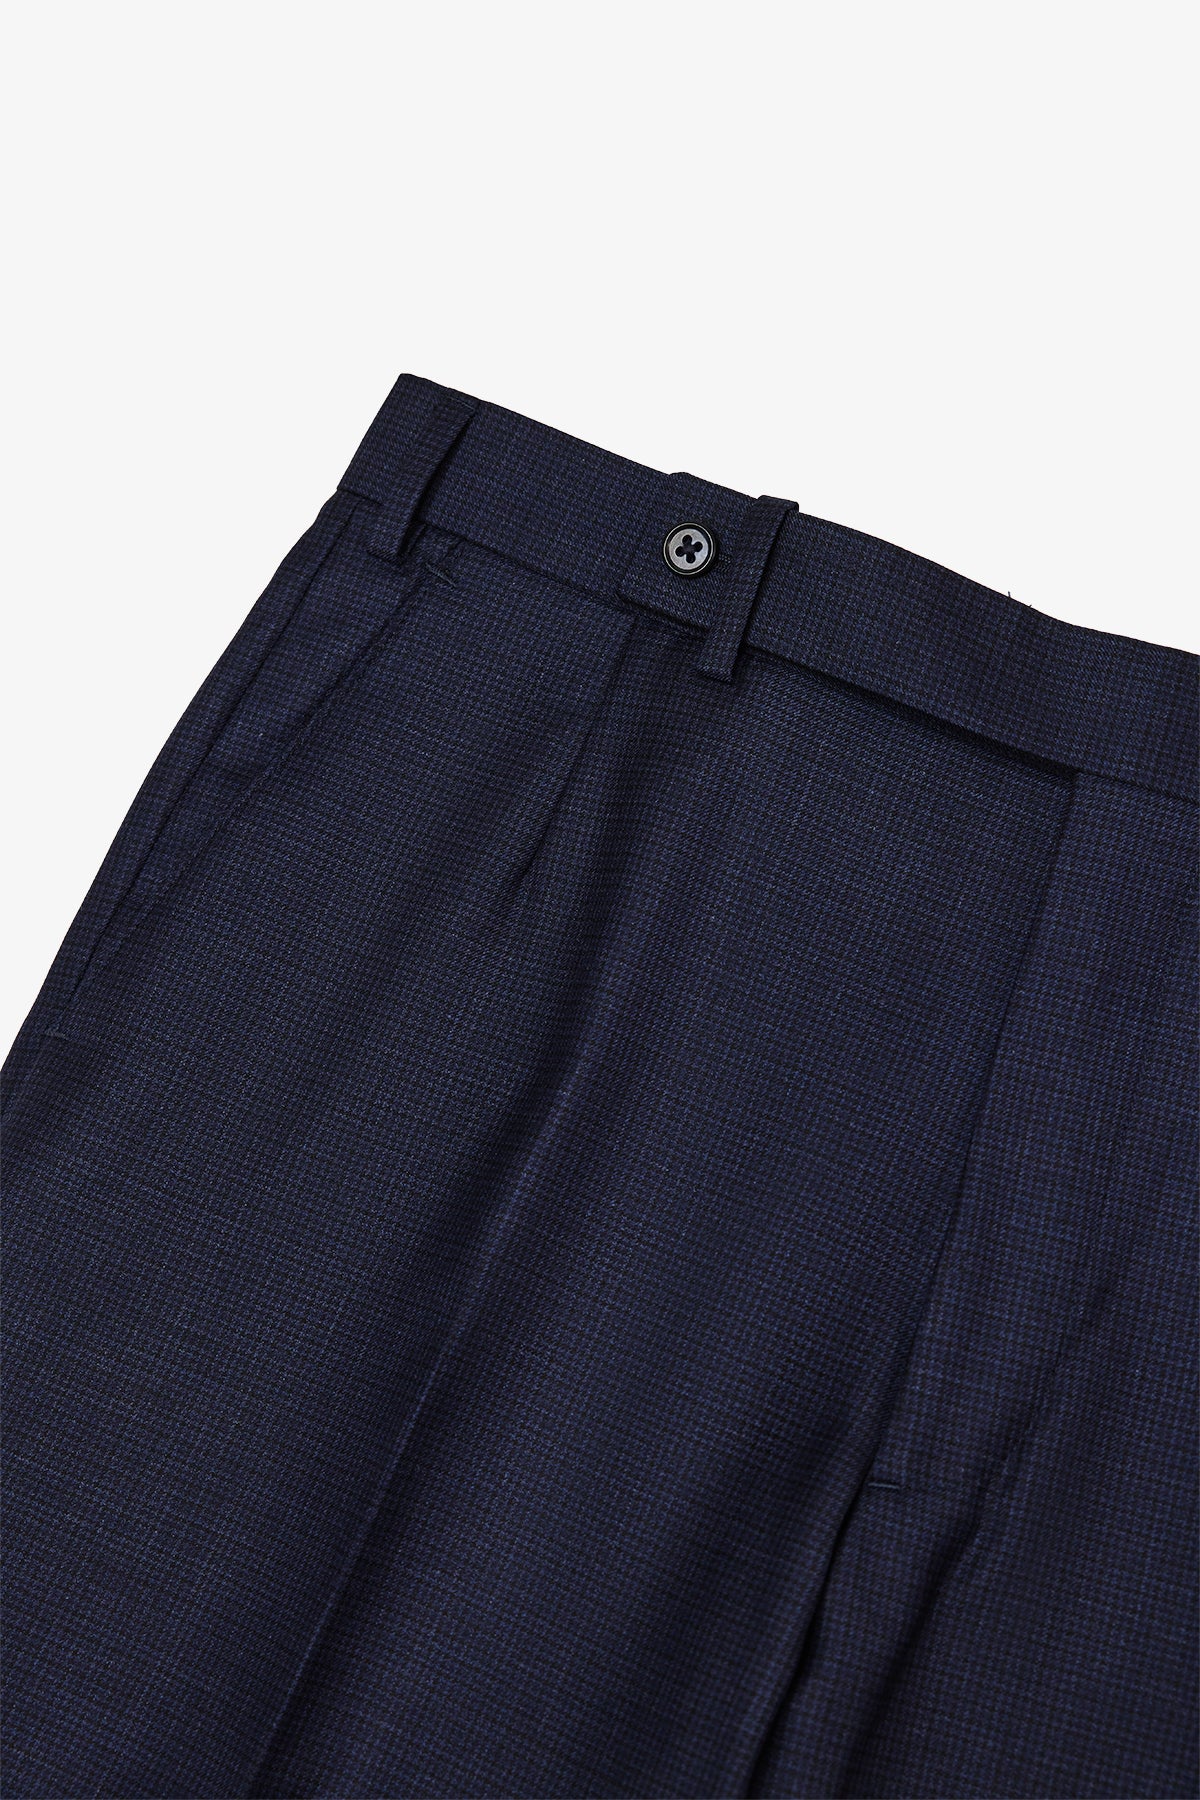 Slack - Navy Trouser